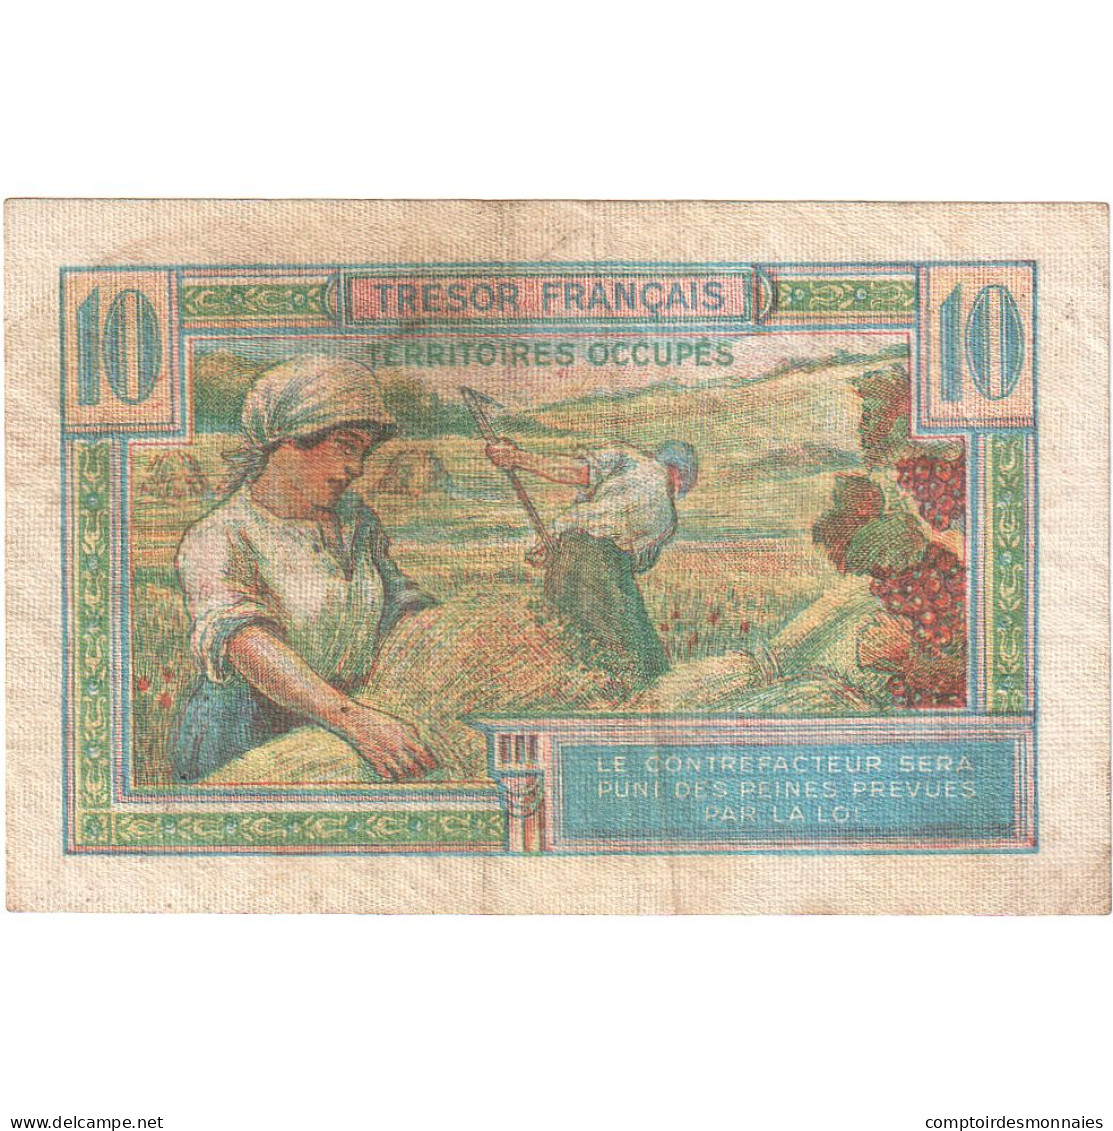 France, 10 Francs, 1947 Trésor Français, 1947, A.01834235, SUP - 1947 French Treasury